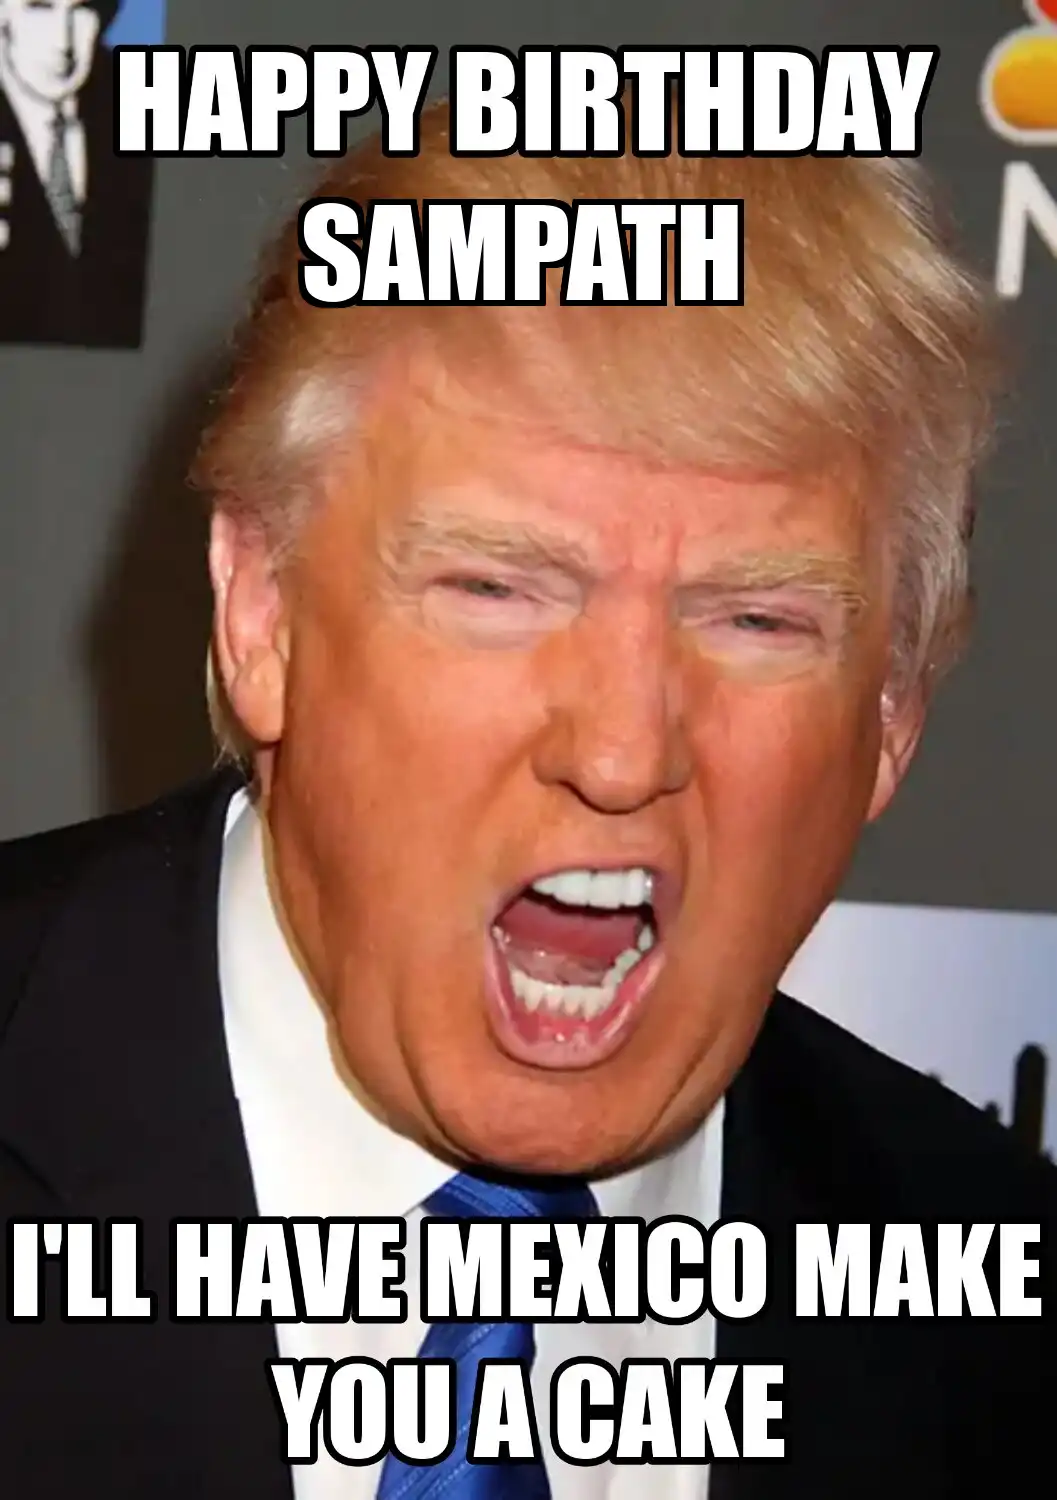 Happy Birthday Sampath Mexico Make You A Cake Meme